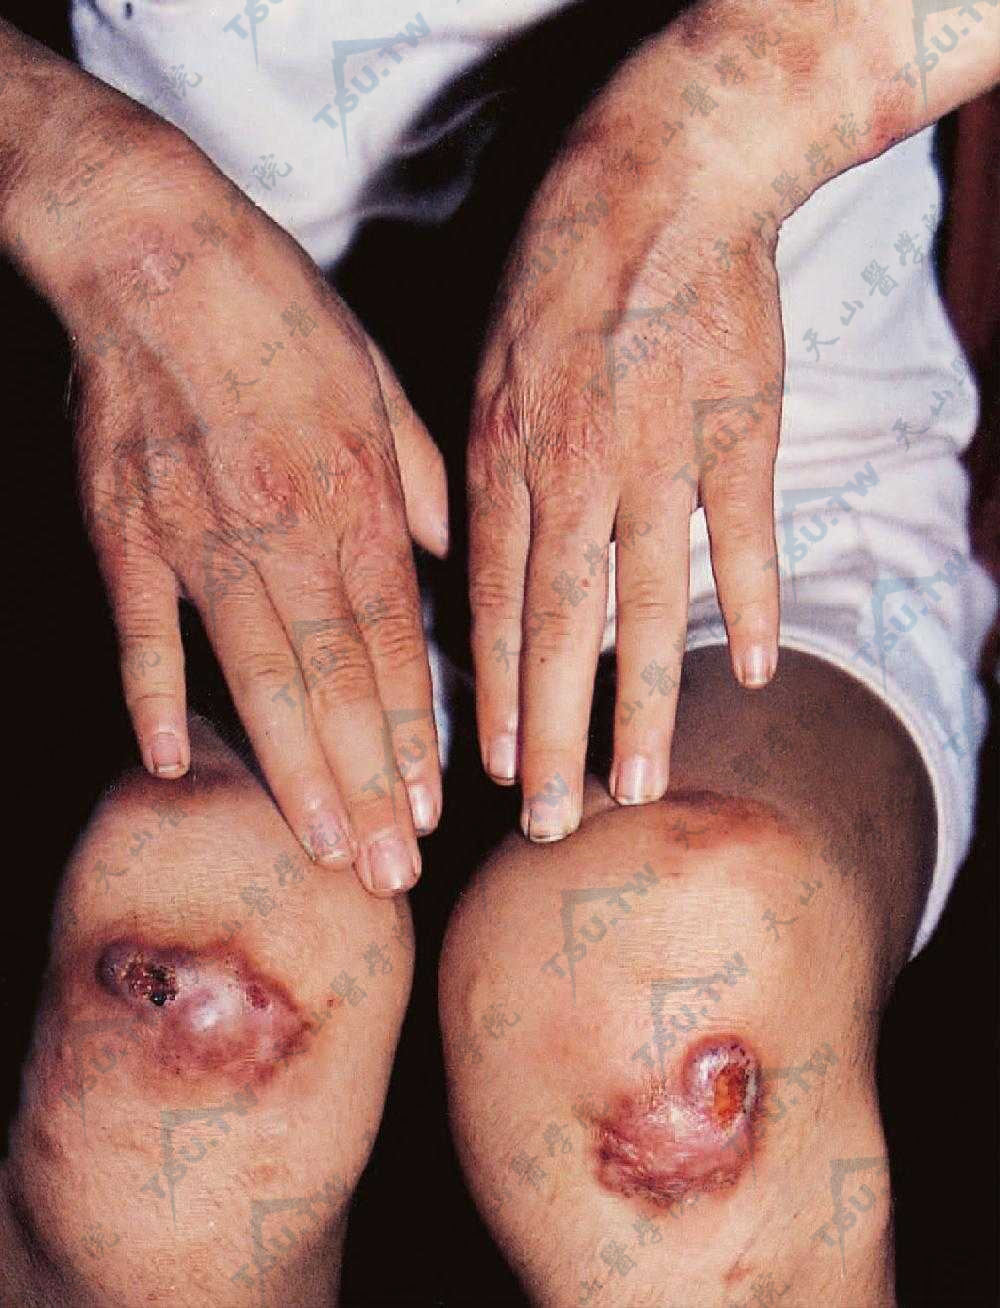 膝关节伸侧暗红色斑块，周围散在红色丘疹